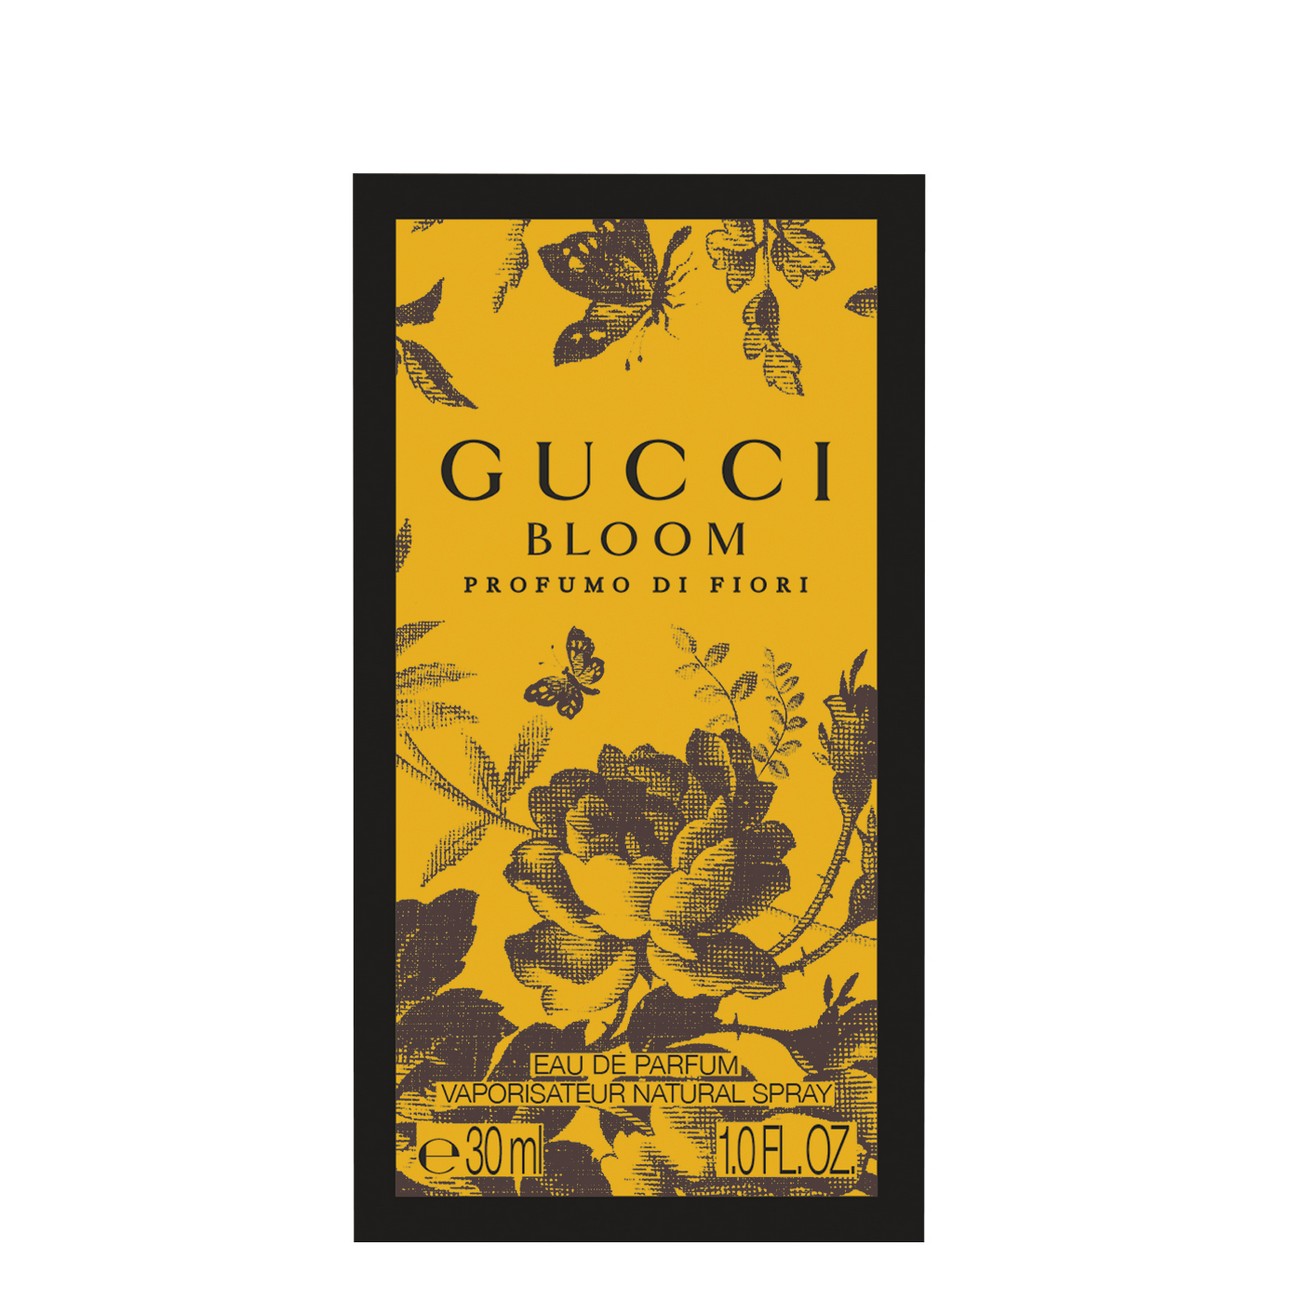 Gucci Bloom Profumo di Fiori Eau de Parfum 30ml